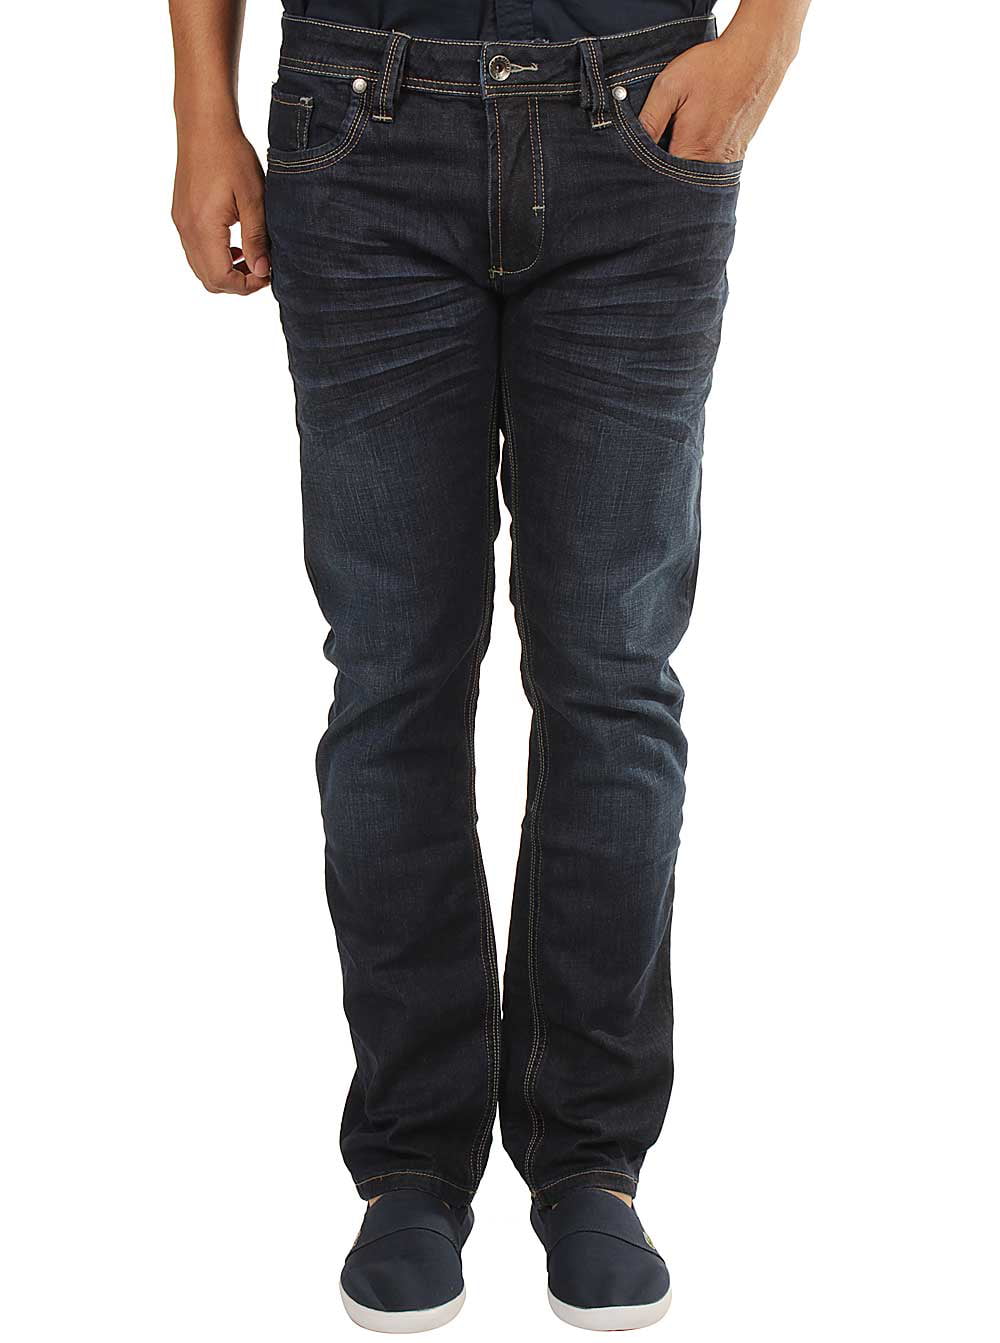 Parasuco Men's Low-Rise Slim Jeans in Indigo - Walmart.com